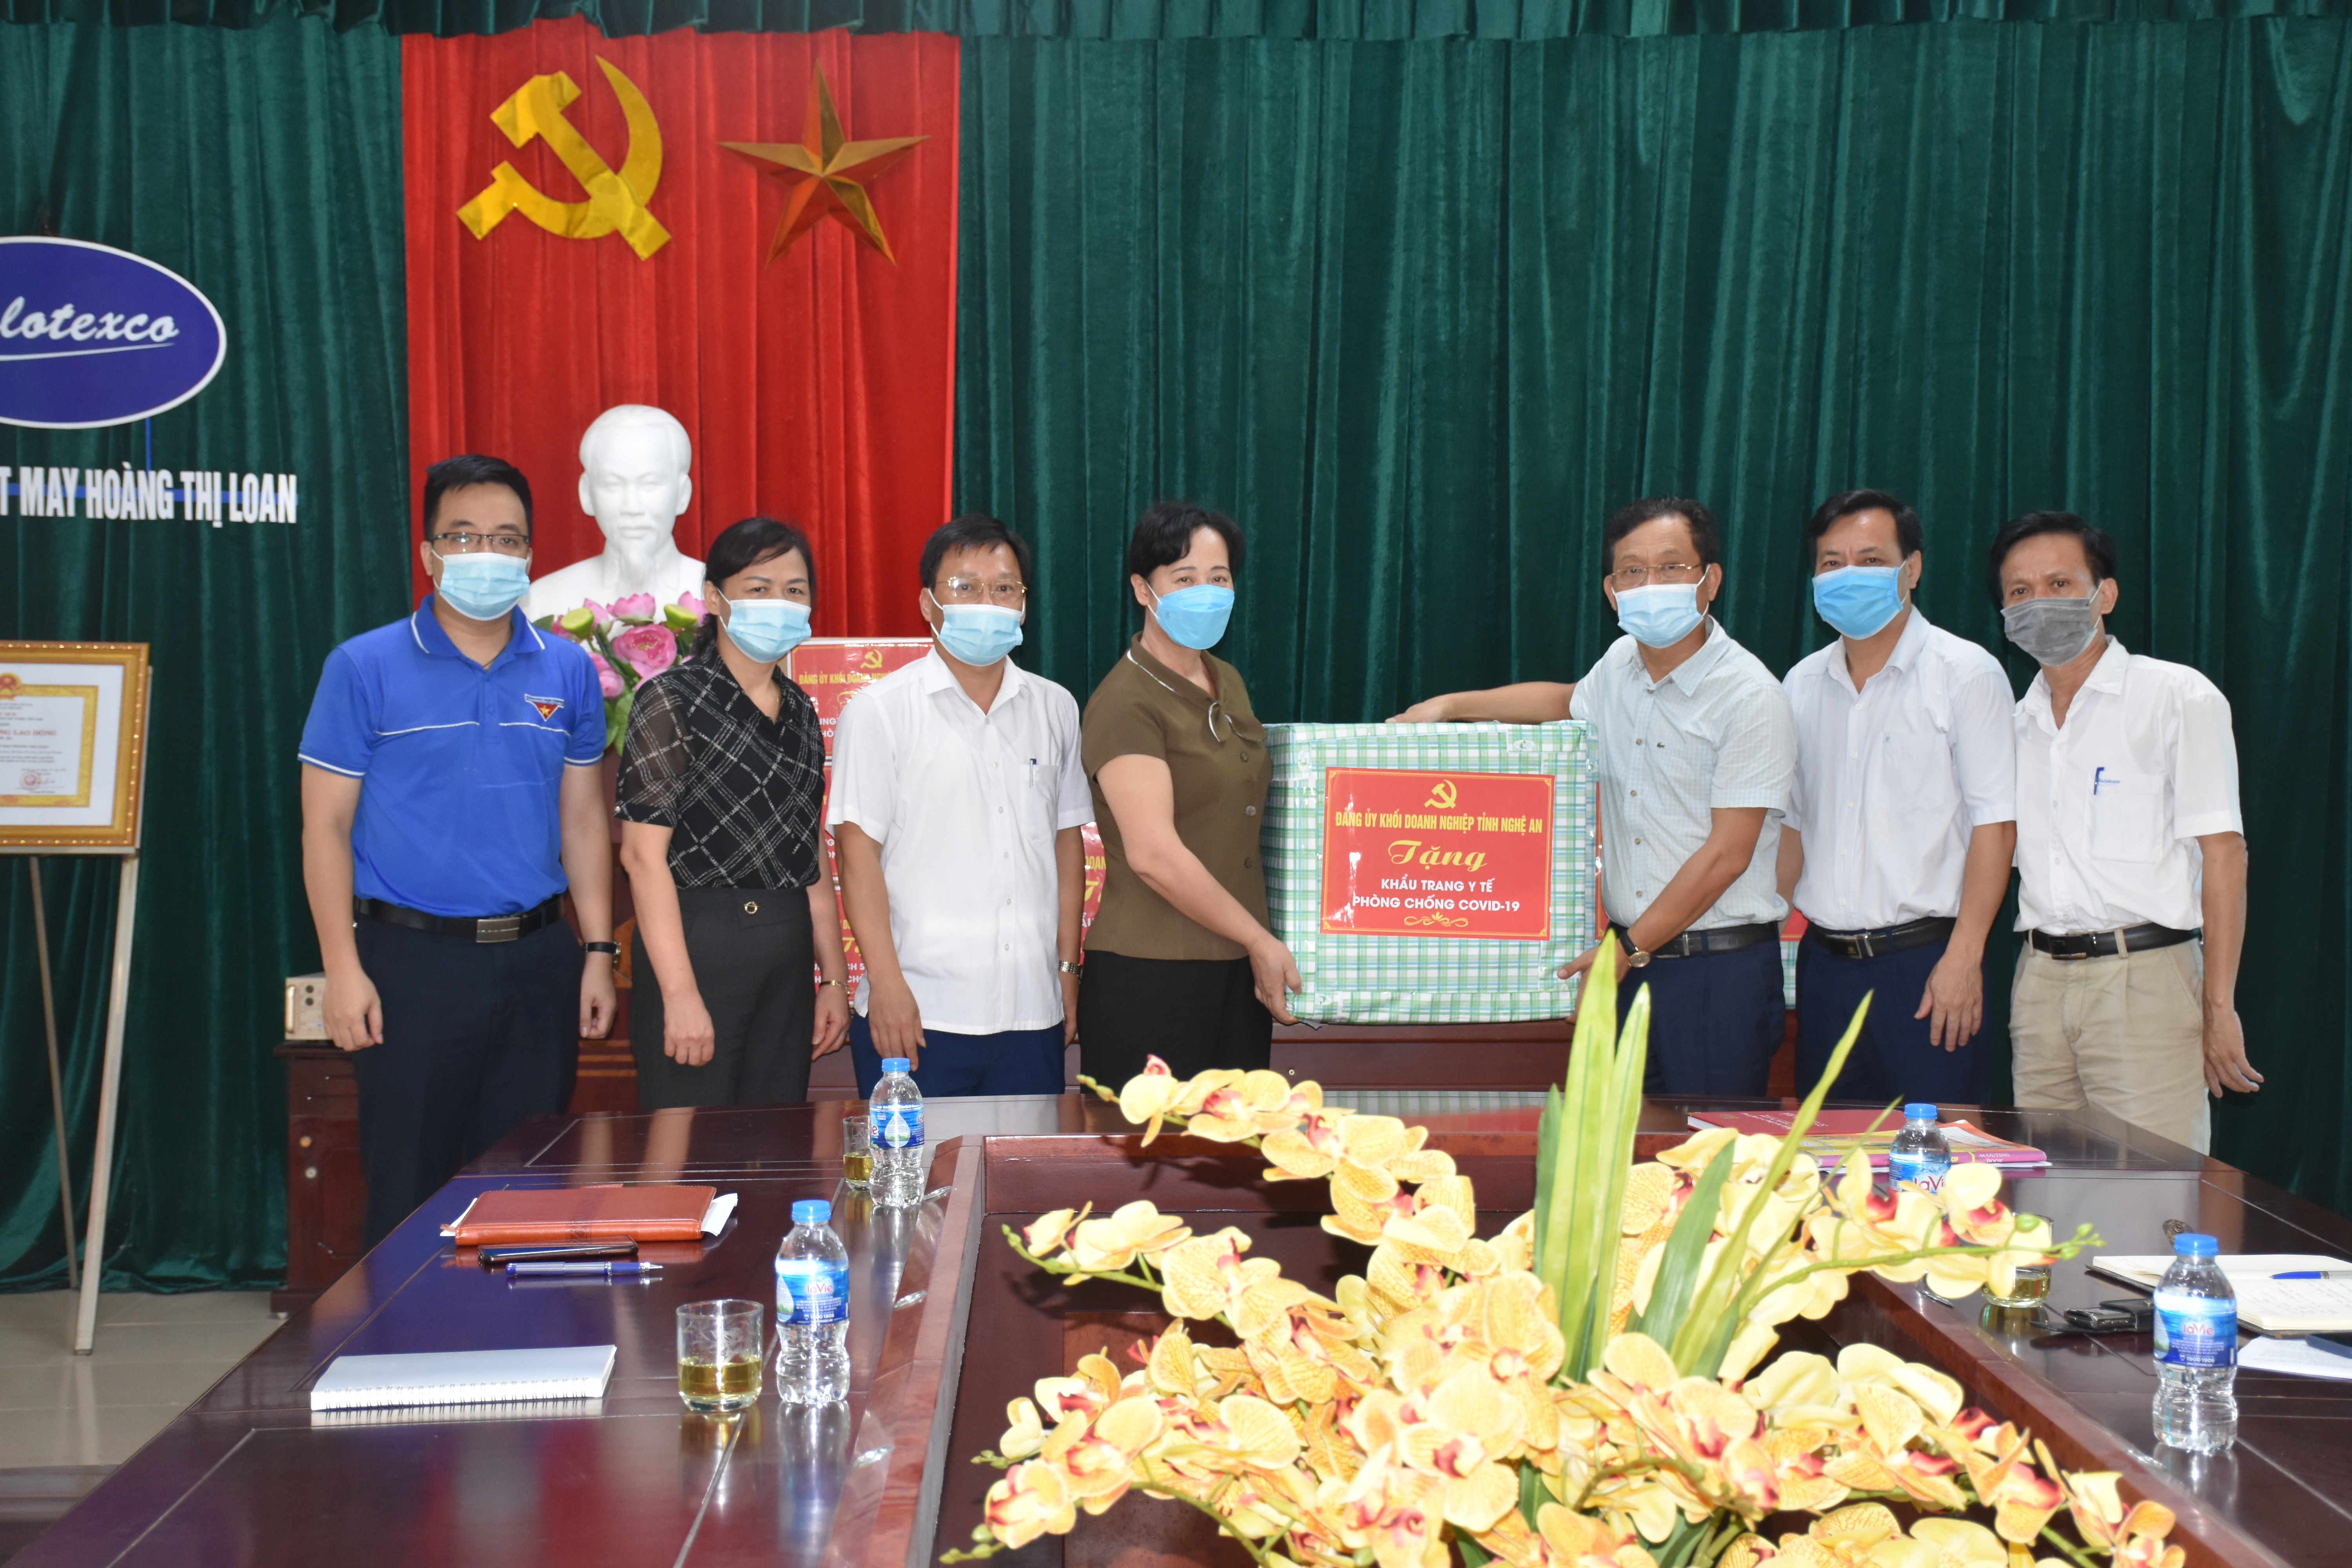 Đảng ủy Khối doanh nghiệp tặng khẩu trang y tế và nước sát khuẩn cho công ty CP Dệt may Hoàng Thị Loan